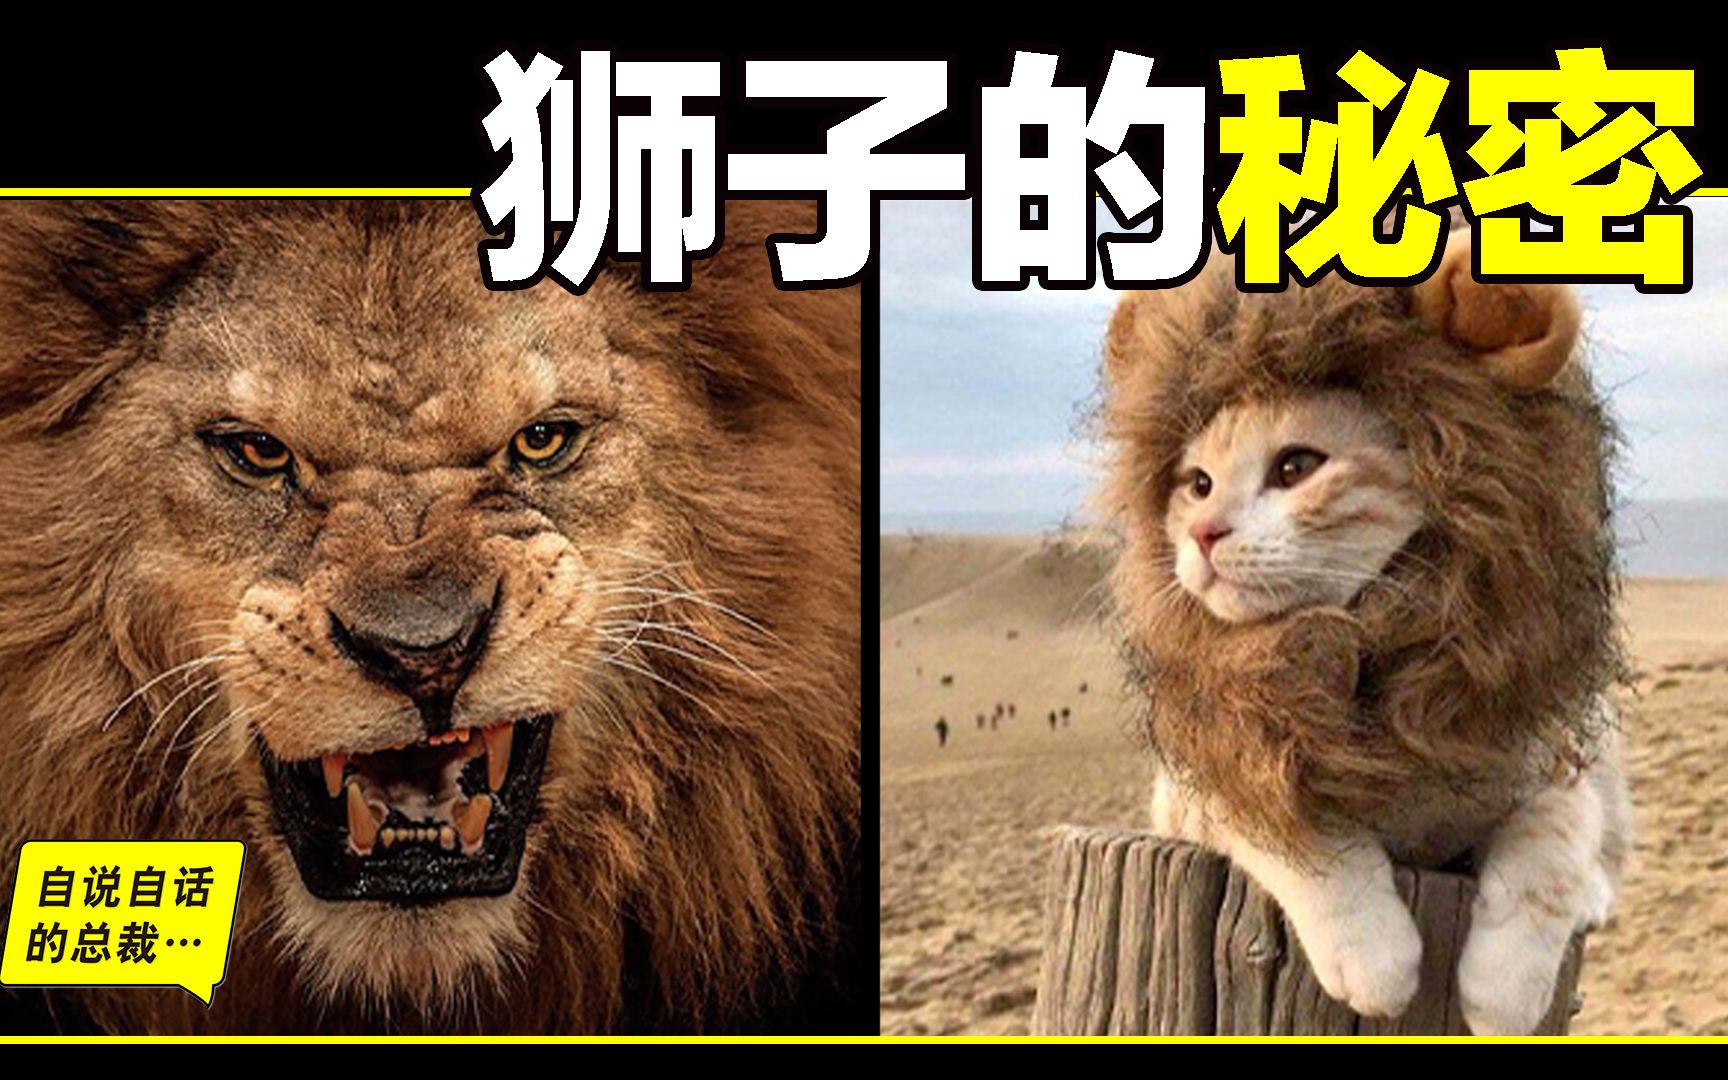 狮子：睁眼瞎，没耐力，胃不好，跑不快，还阴险狡诈？狮子为什麽爱捕猎斑马？又为什麽和鬣狗不共戴天？中国人为什么崇拜狮子？也许，我们并不了解狮子的真相……